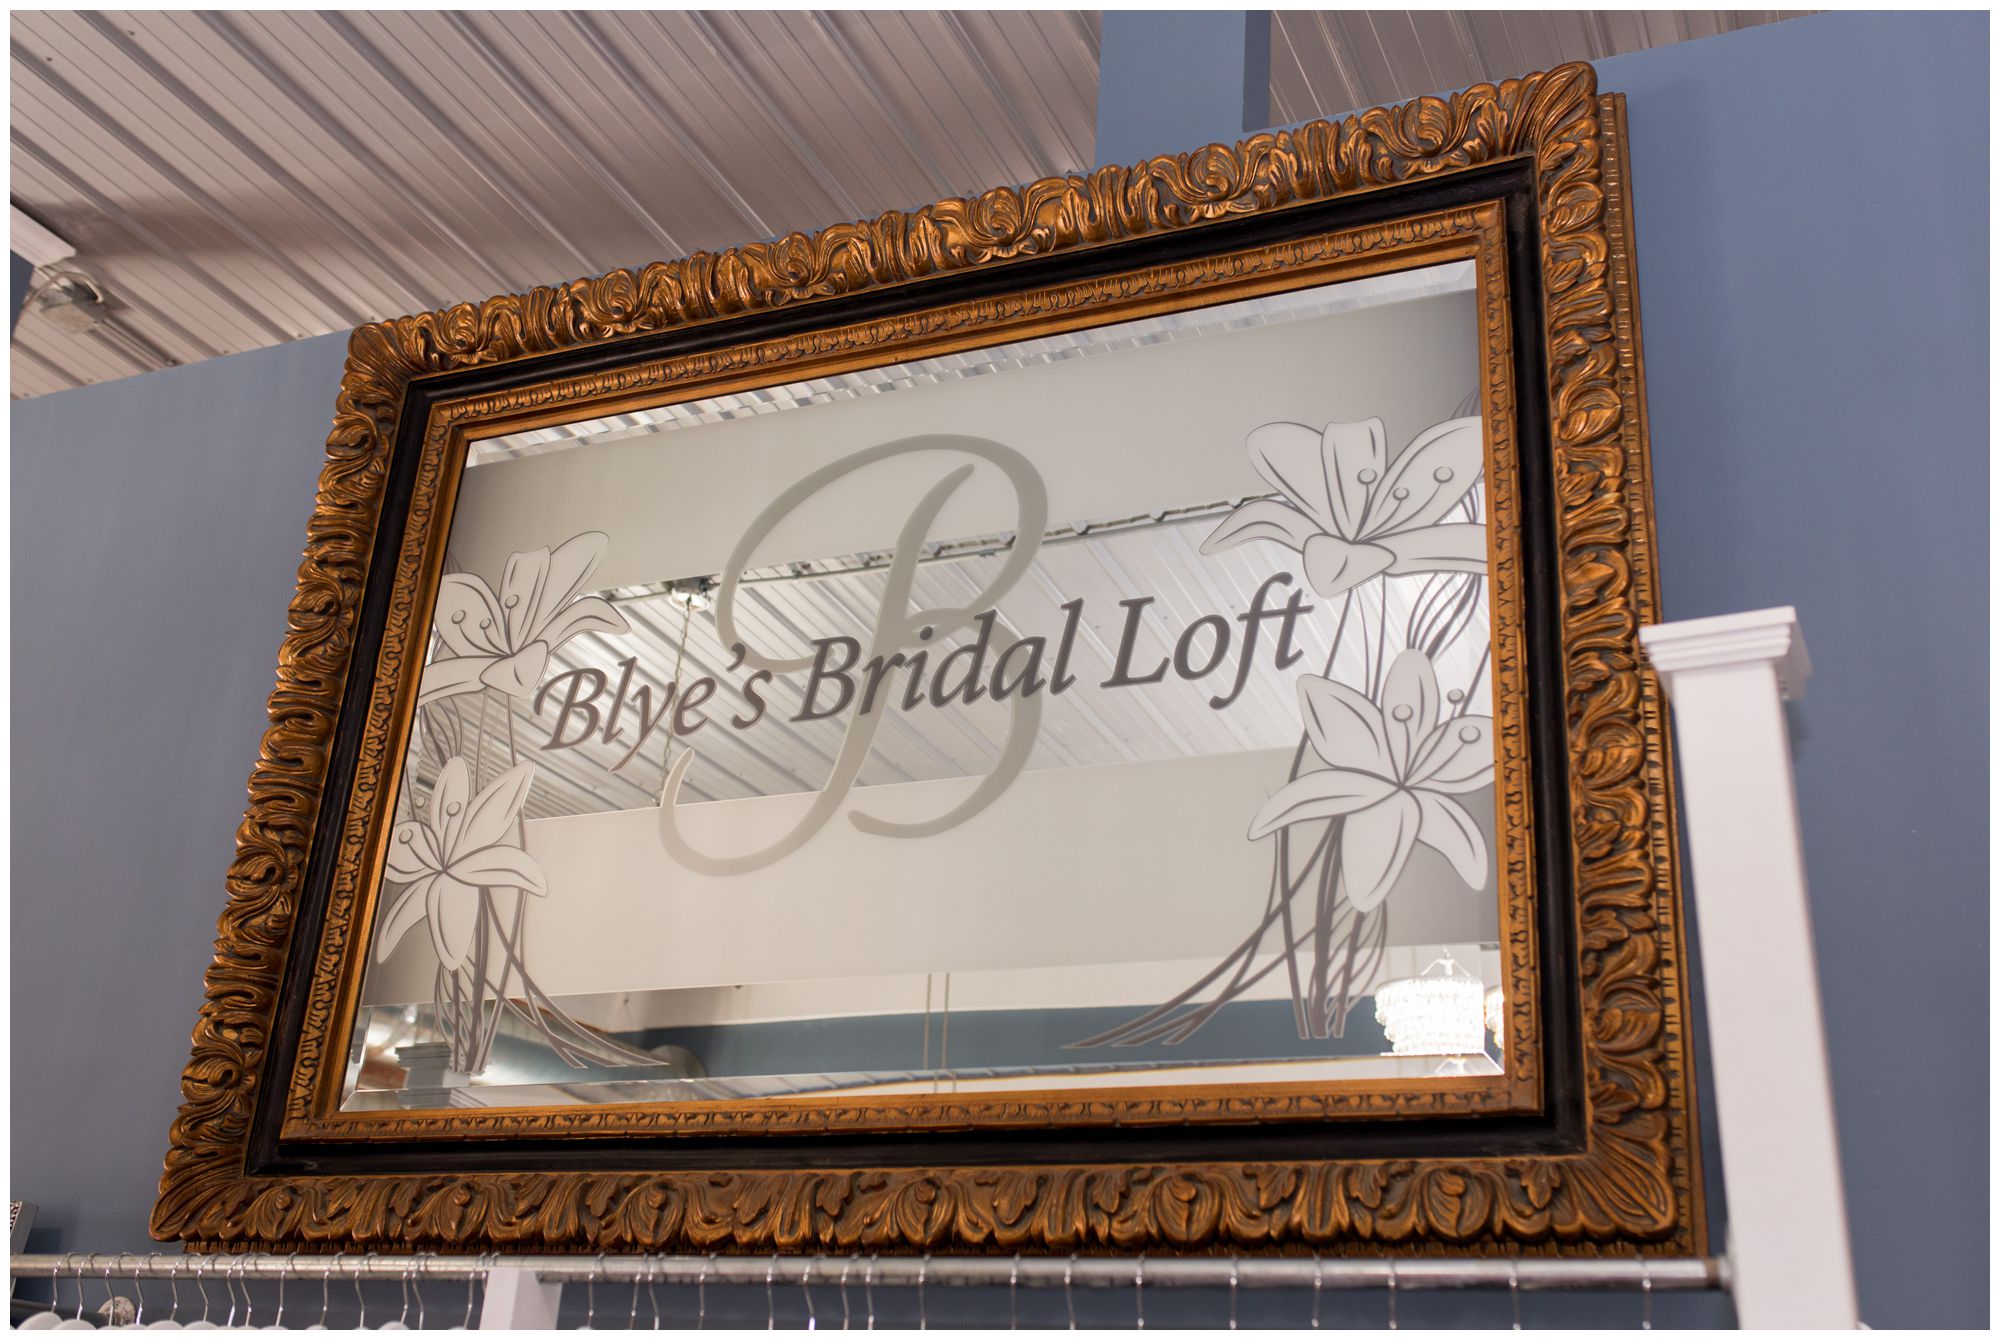 Blye's Bridal Loft